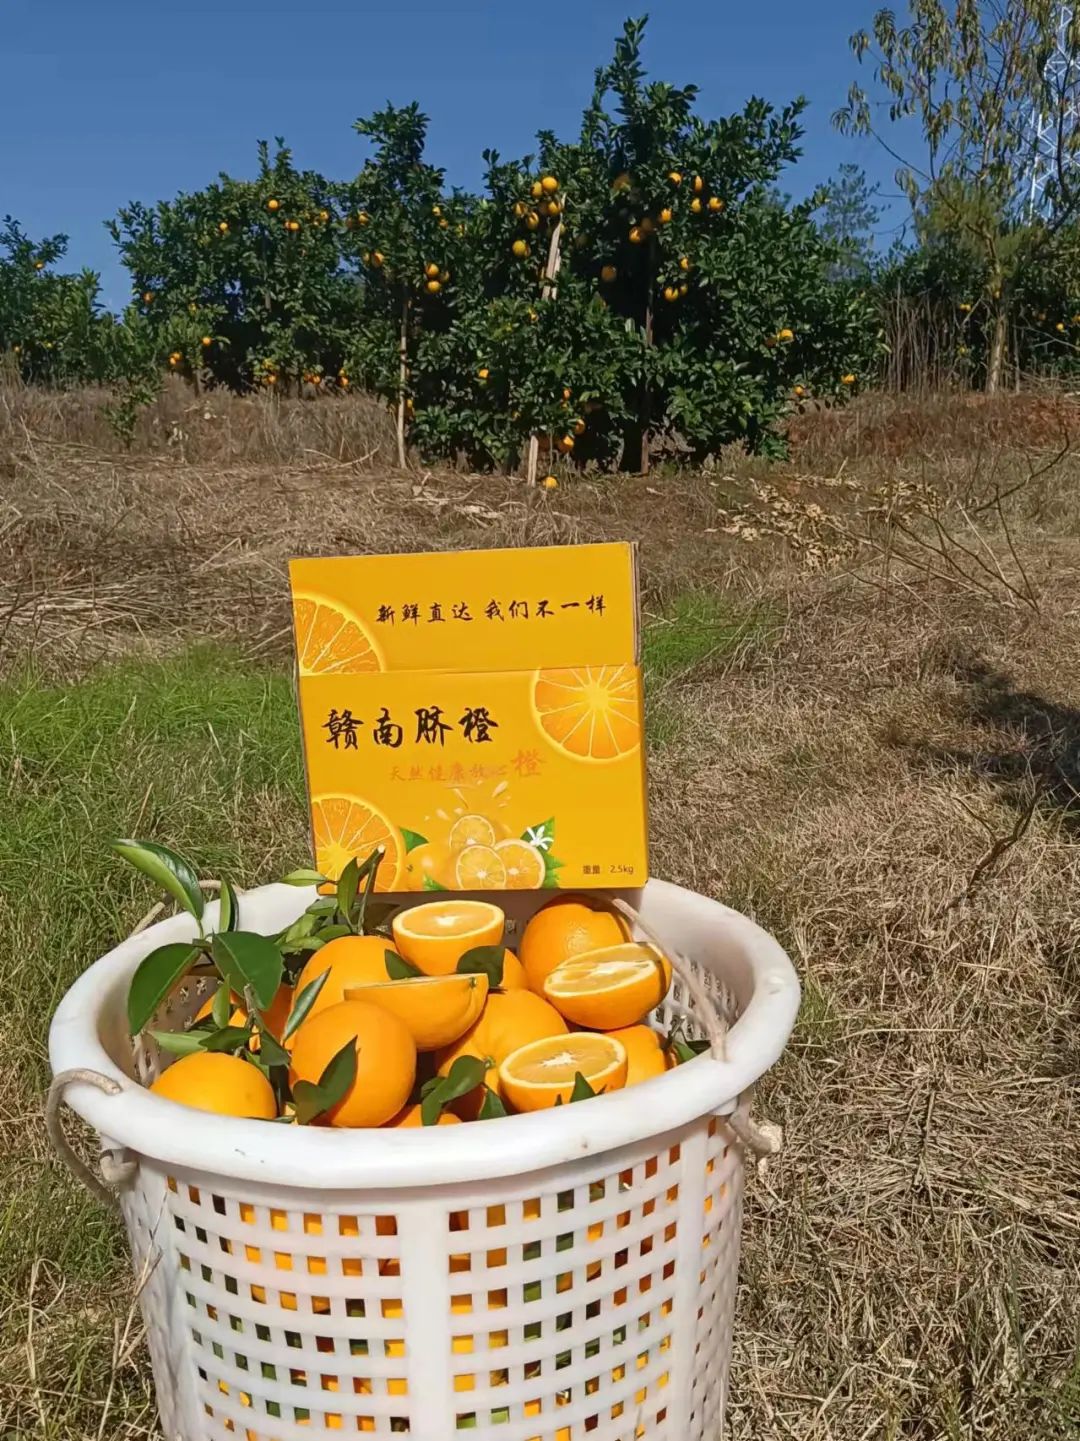 甜到爆汁！很多惠州人爱吃的赣南脐橙一箱29.9元起